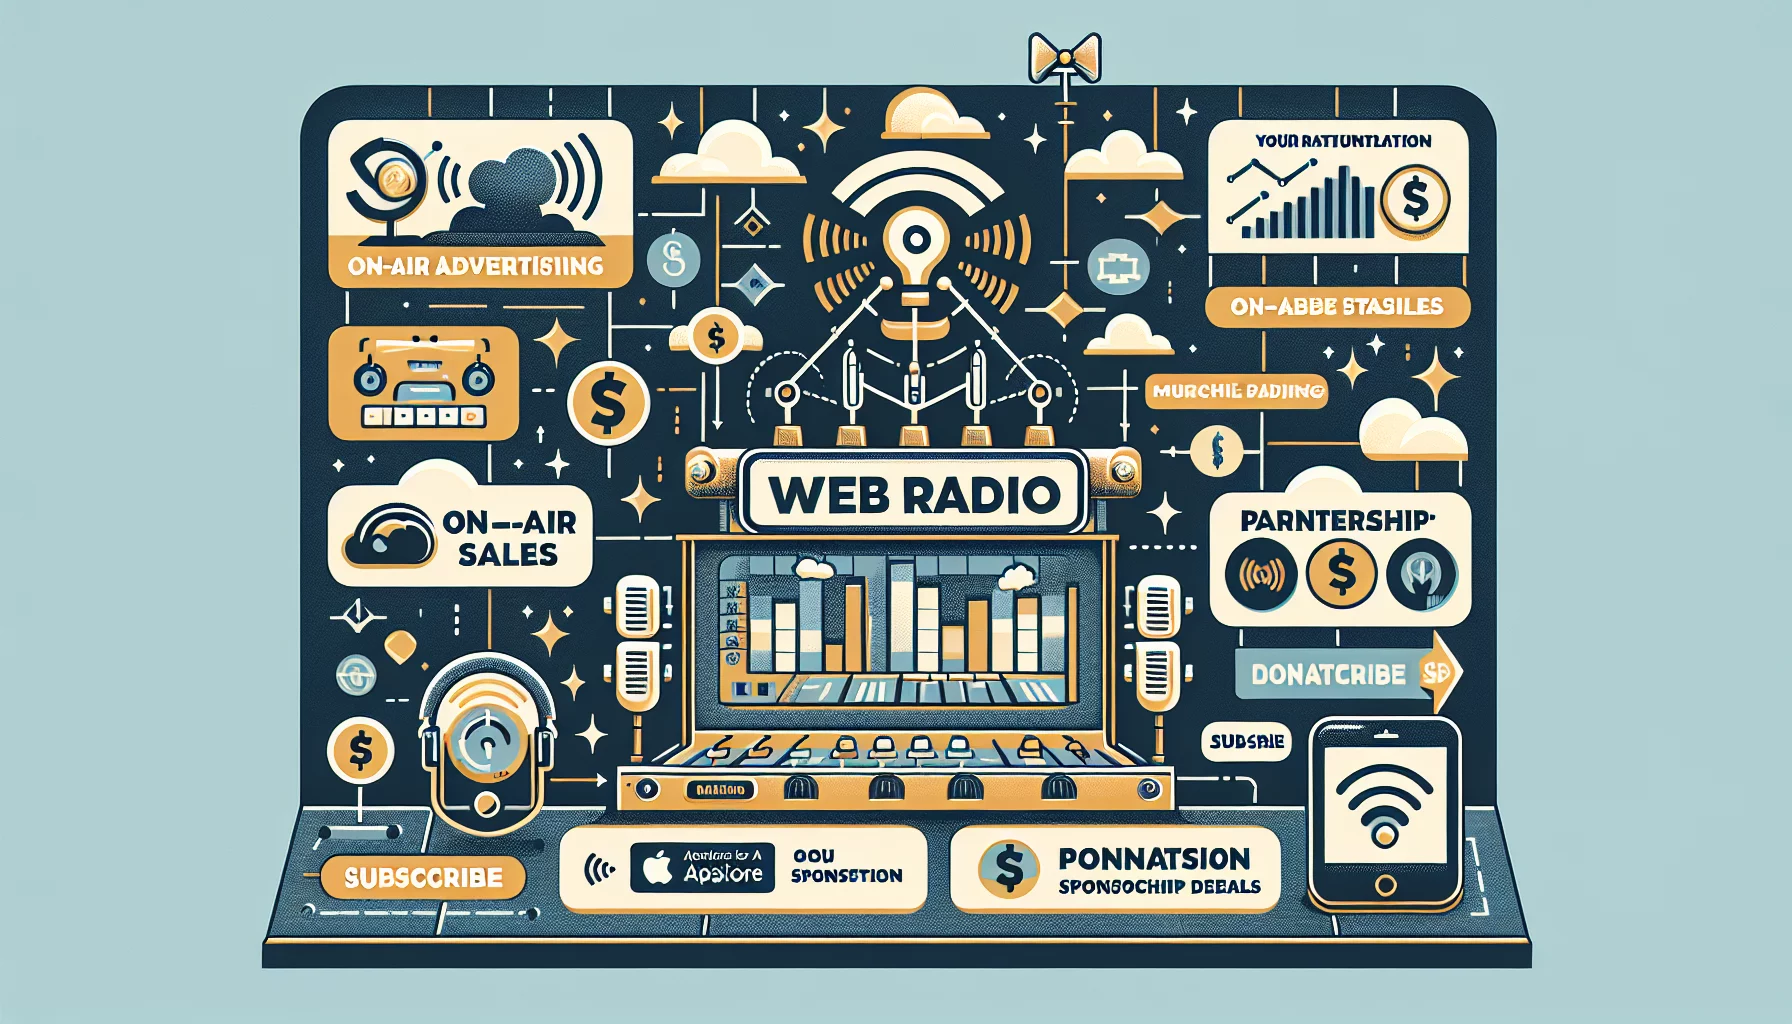 Comment faire pour monétiser votre webradio et générer des revenus?